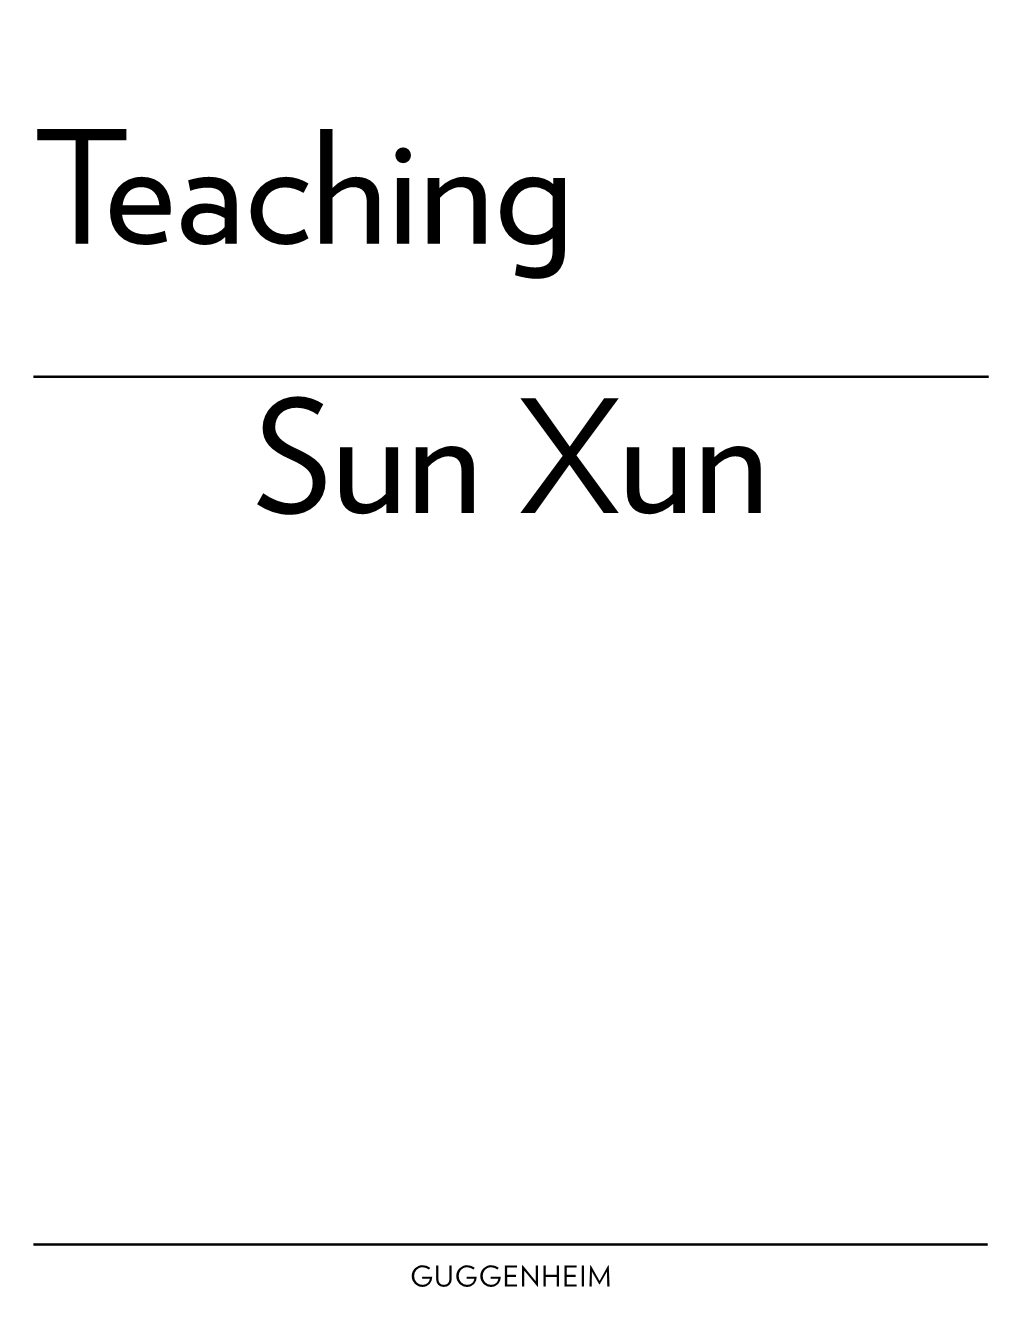 Teaching Sun Xun 2 TEACHING ARTIST SUN Xun (Sun Shun) 孙 逊 Sun Xun BORN 1980, Fuxin, China LIVES & WORKS Beijing 3 SUN XUN